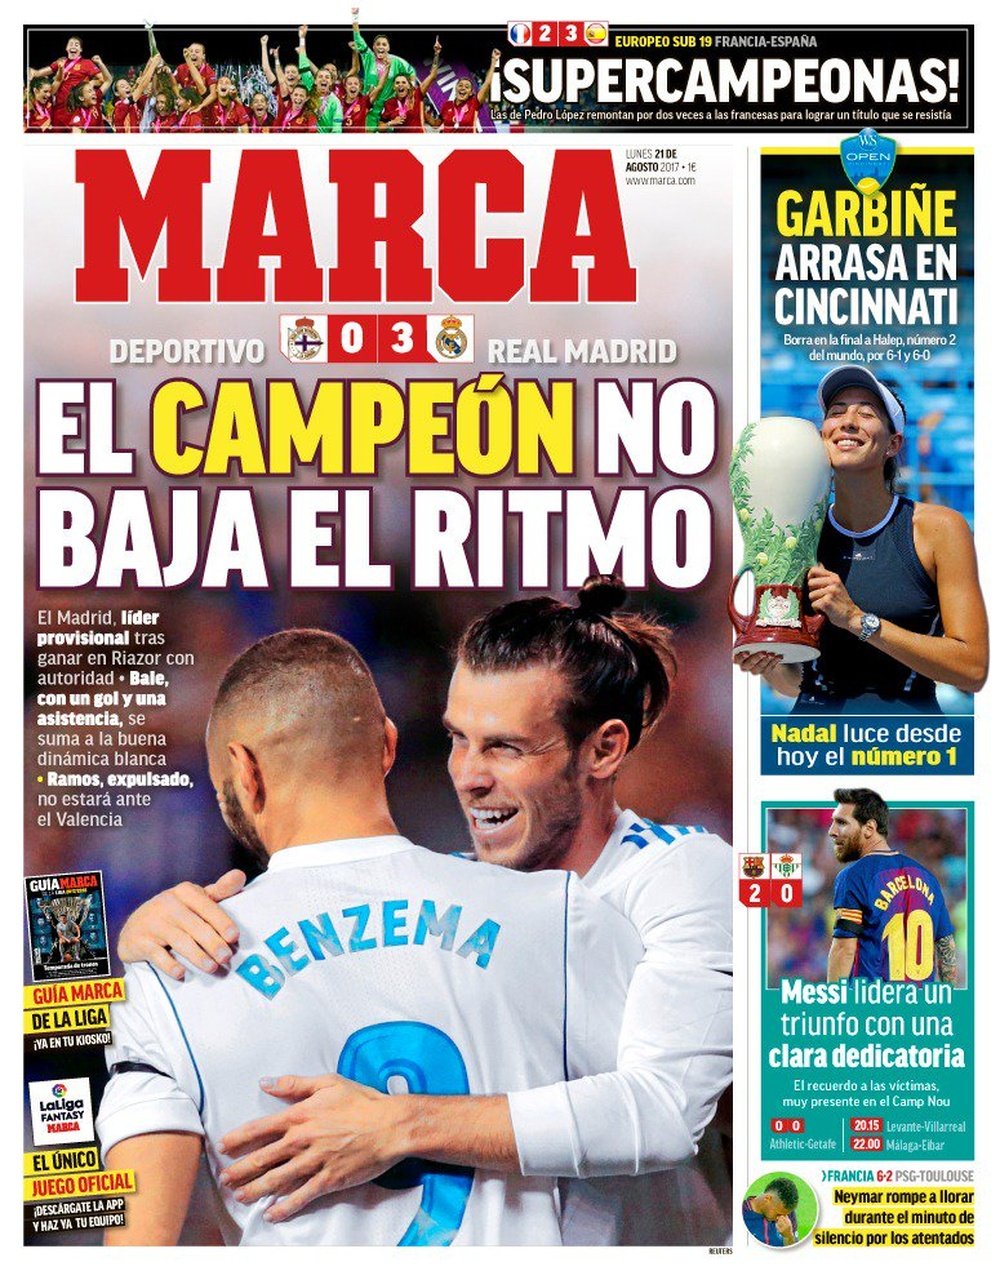 La Une du quotidien sportif espagnol 'Marca' du 21-08-17. Marca